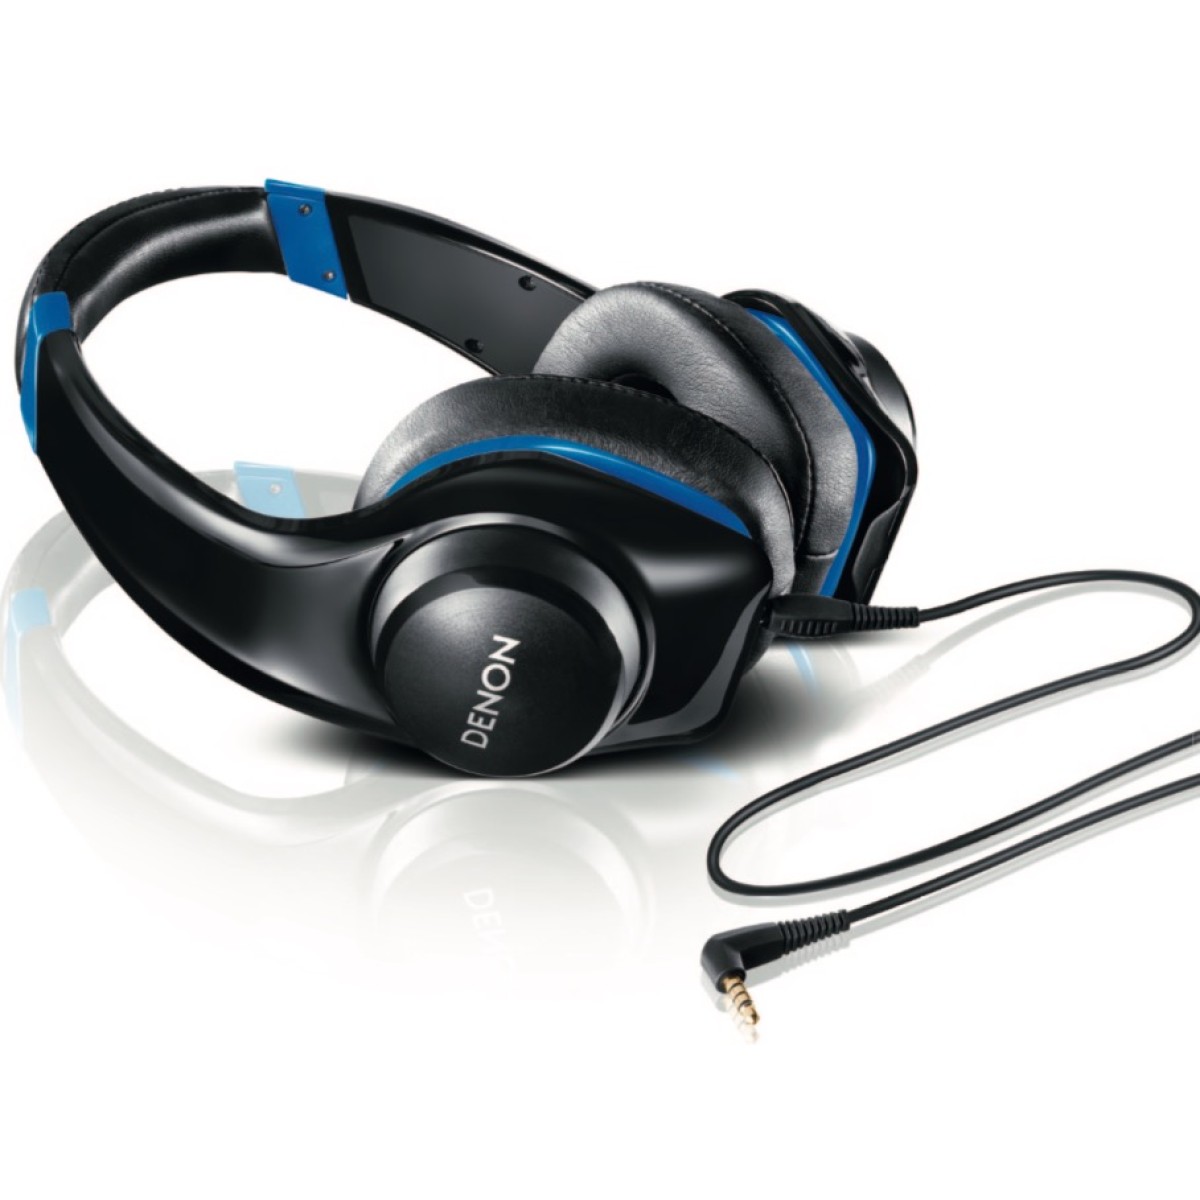 Hier sehen Sie den Artikel AH-D321 On Ear Headphone aus der Kategorie Supra-aural. Dieser Artikel ist erhältlich bei cebrands.ch